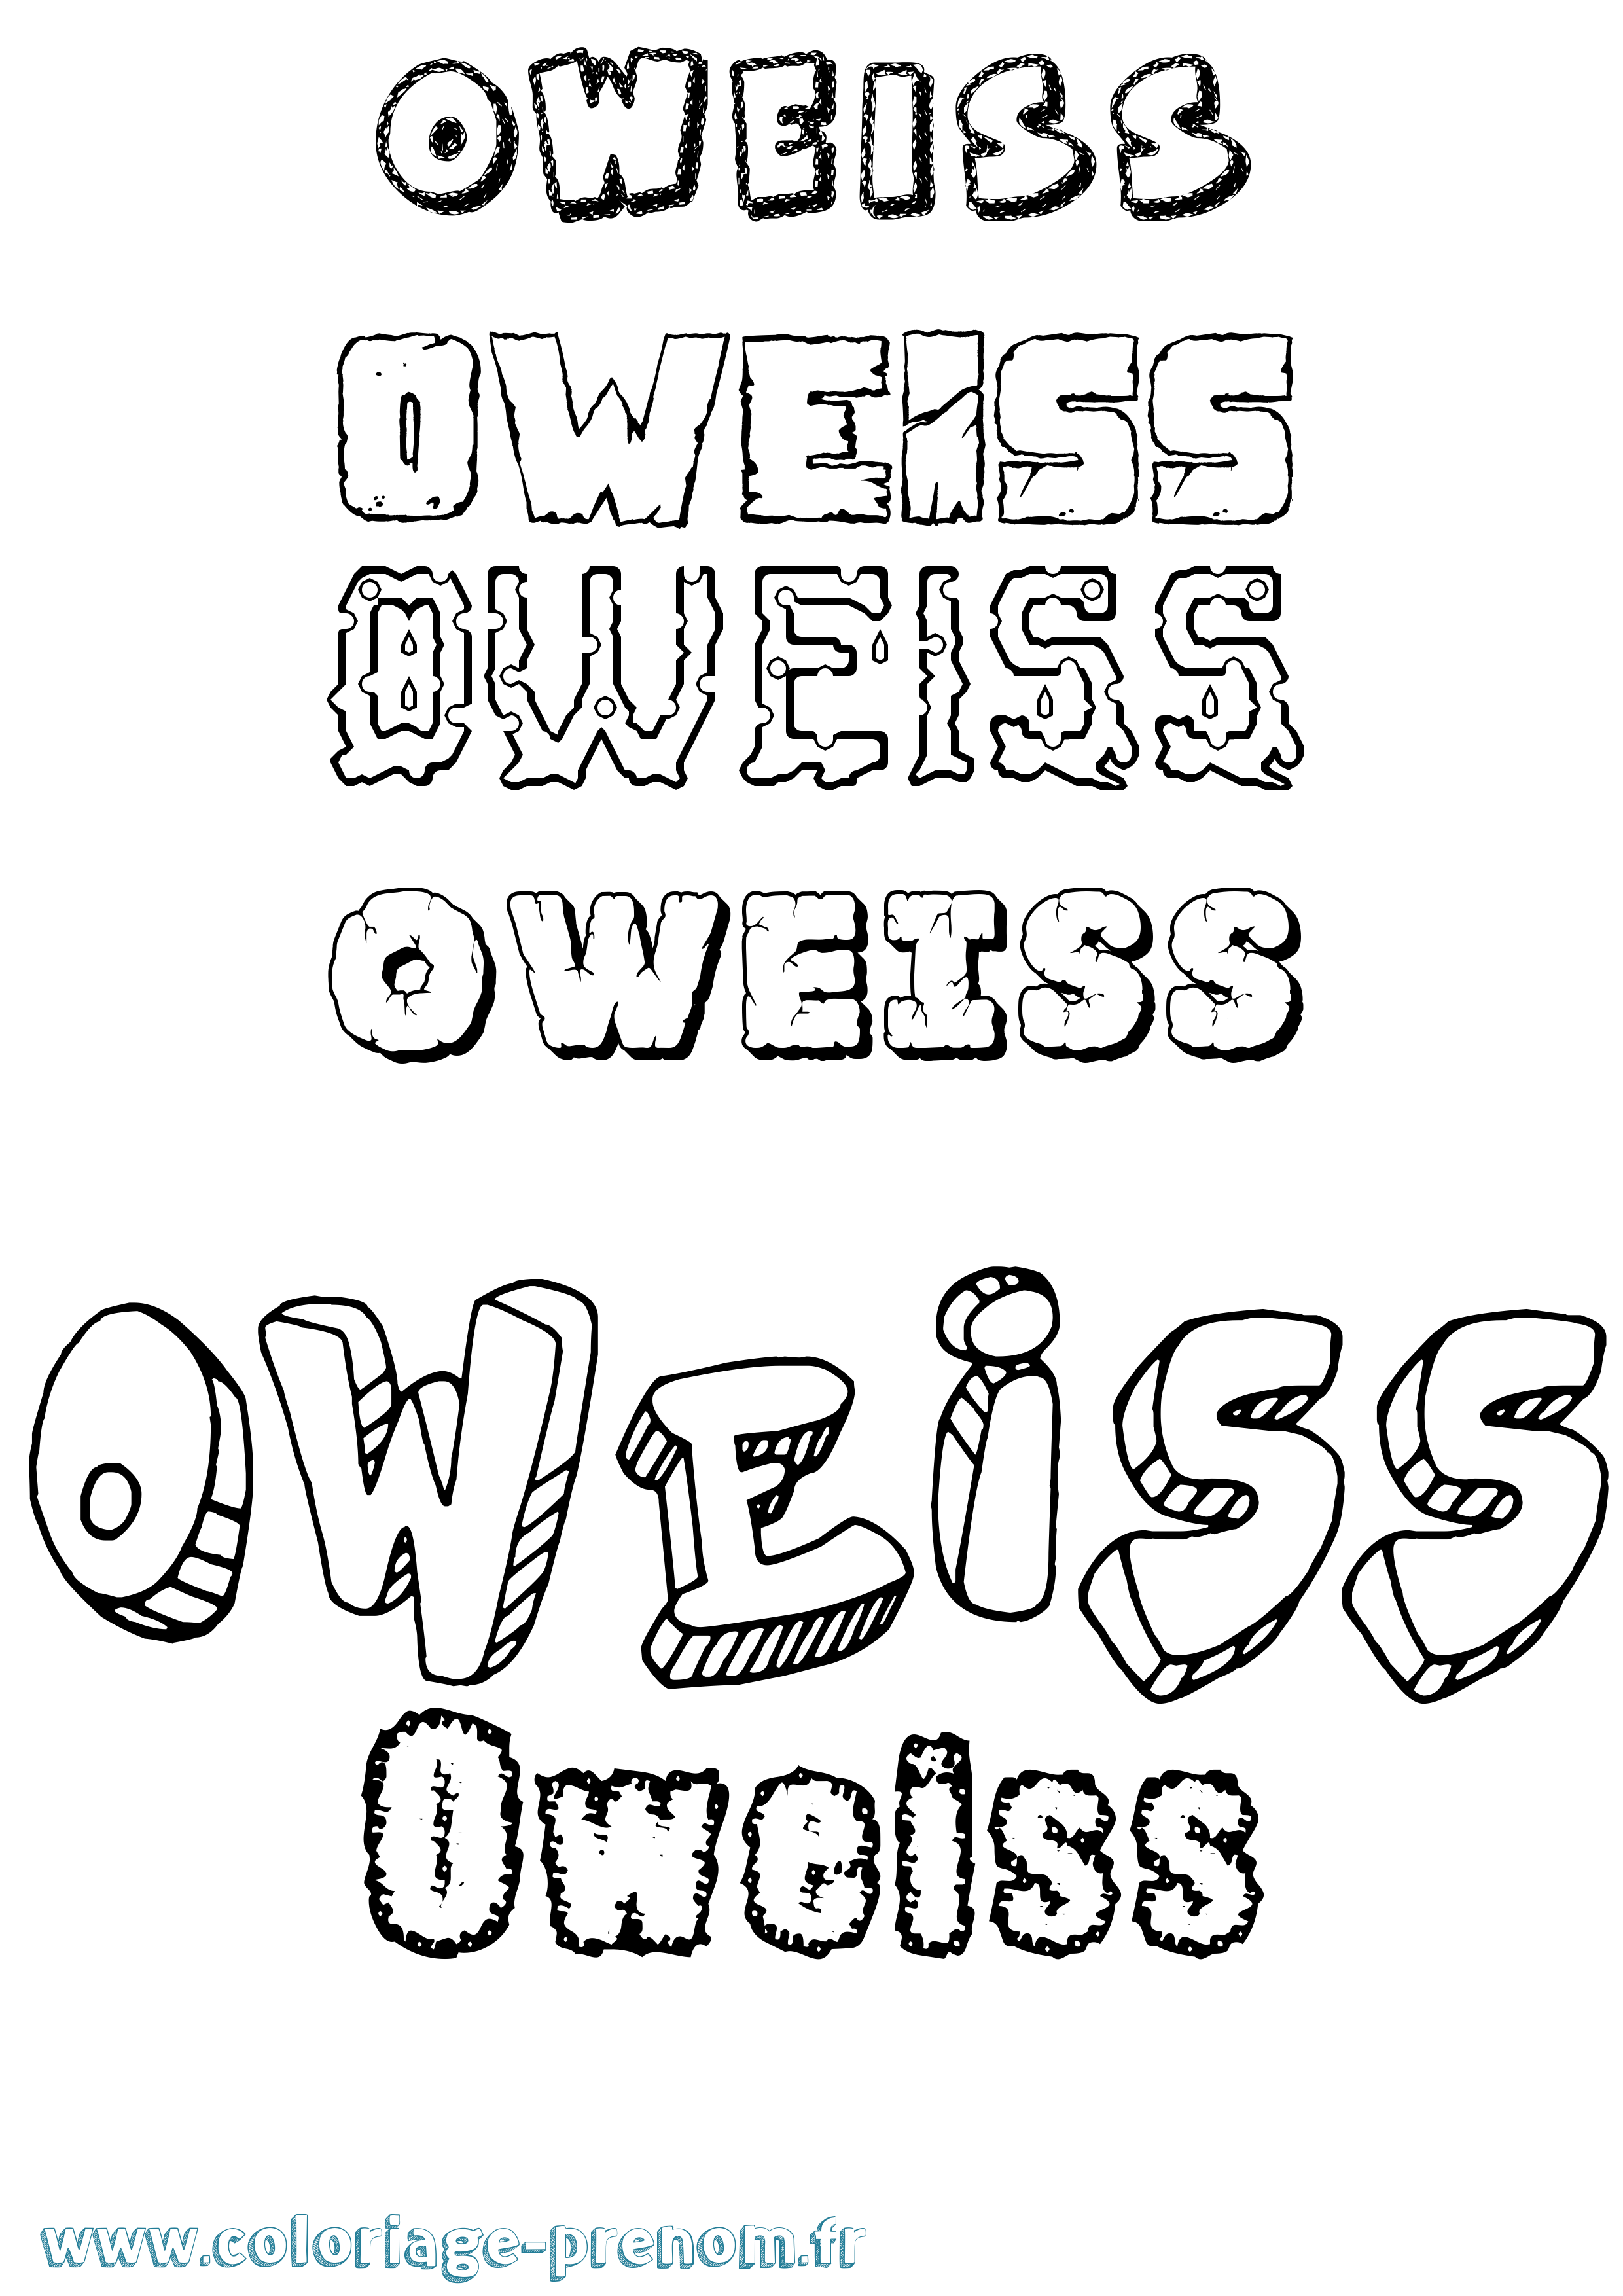 Coloriage prénom Oweiss Destructuré